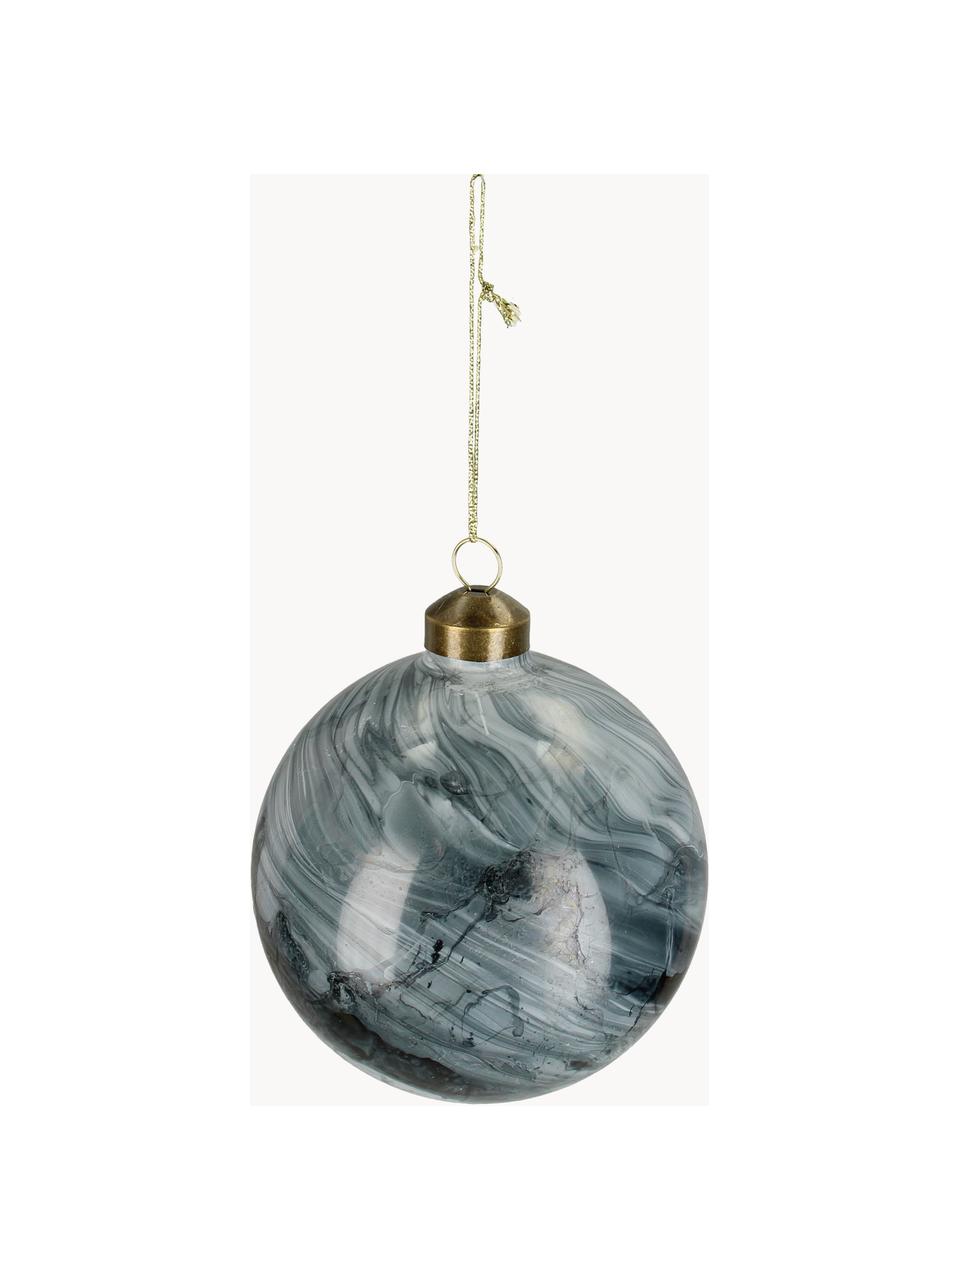 Weihnachtskugeln Marble in Marmoroptik, 6 Stück, Glas, Graublau, Weiss, dunkel, Ø 10 cm